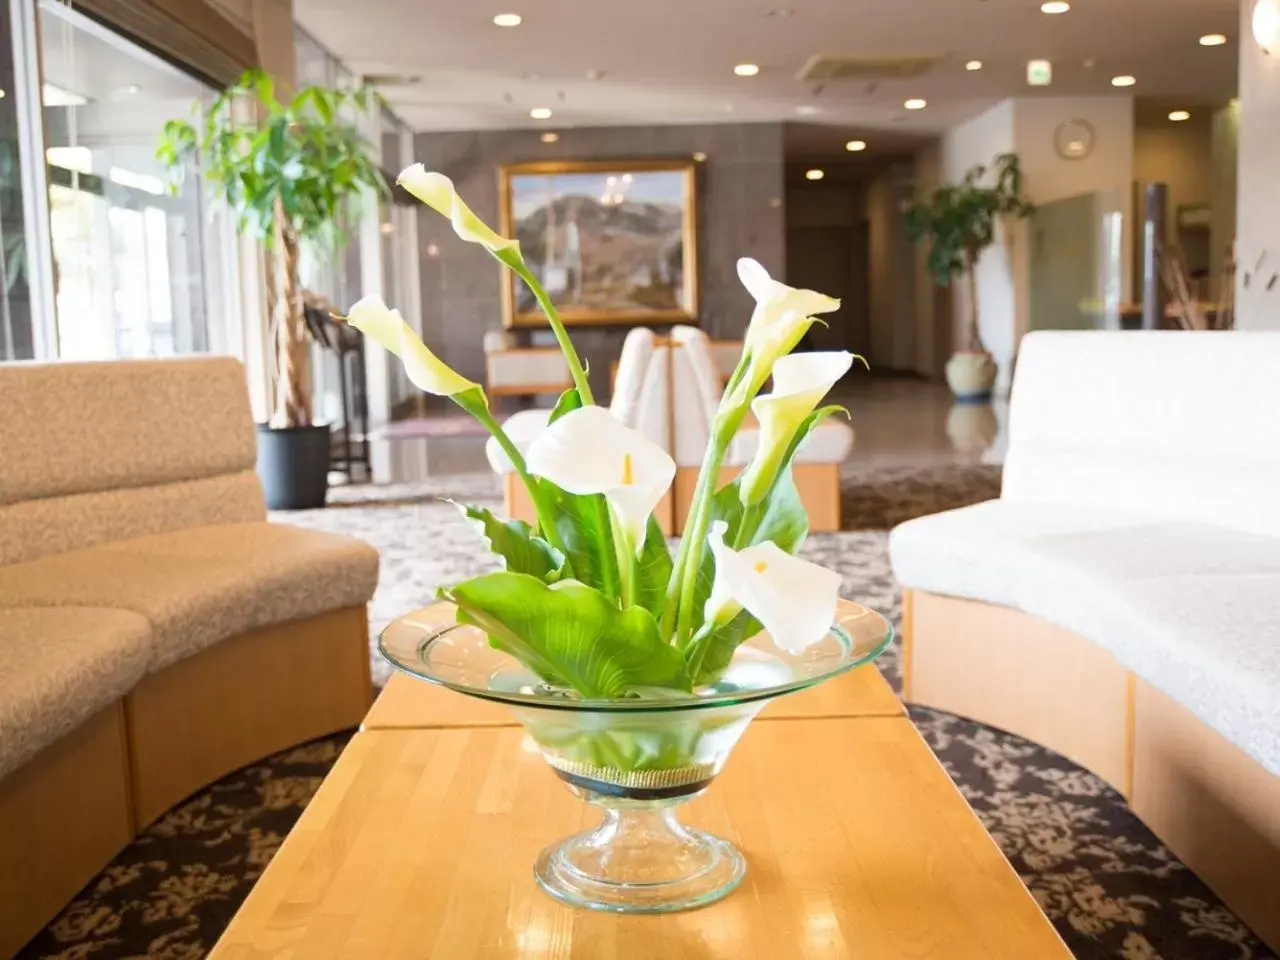 Lobby or reception in Moriyama Art Hotel